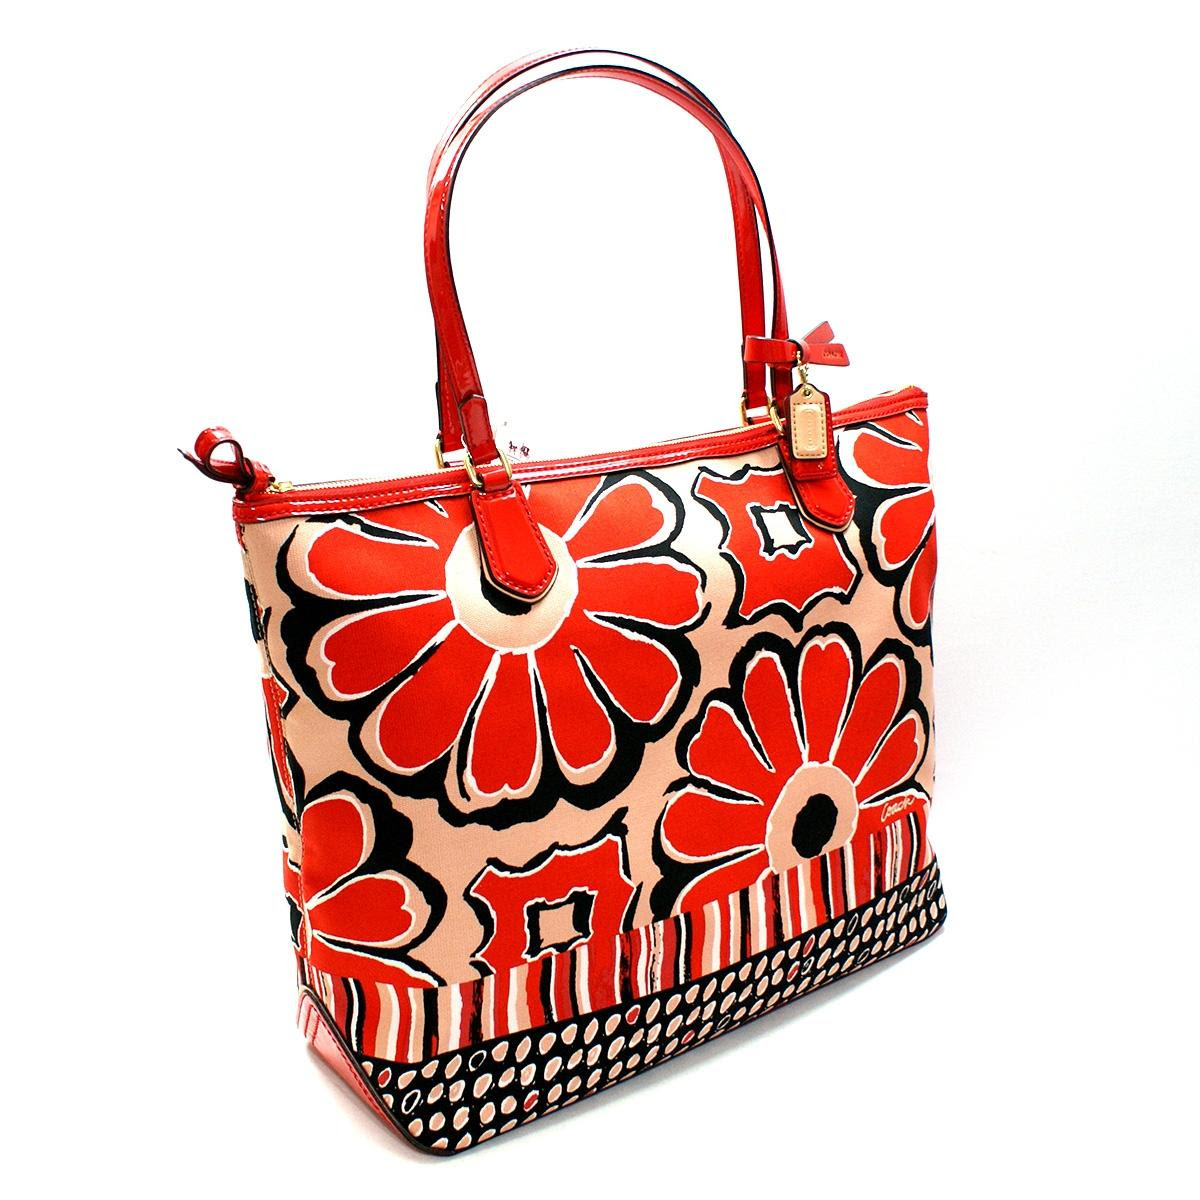 Coach Floral Print Bag / NWT COACH PRAIRIE SATCHEL LEATHER BAG HANDBAG ...